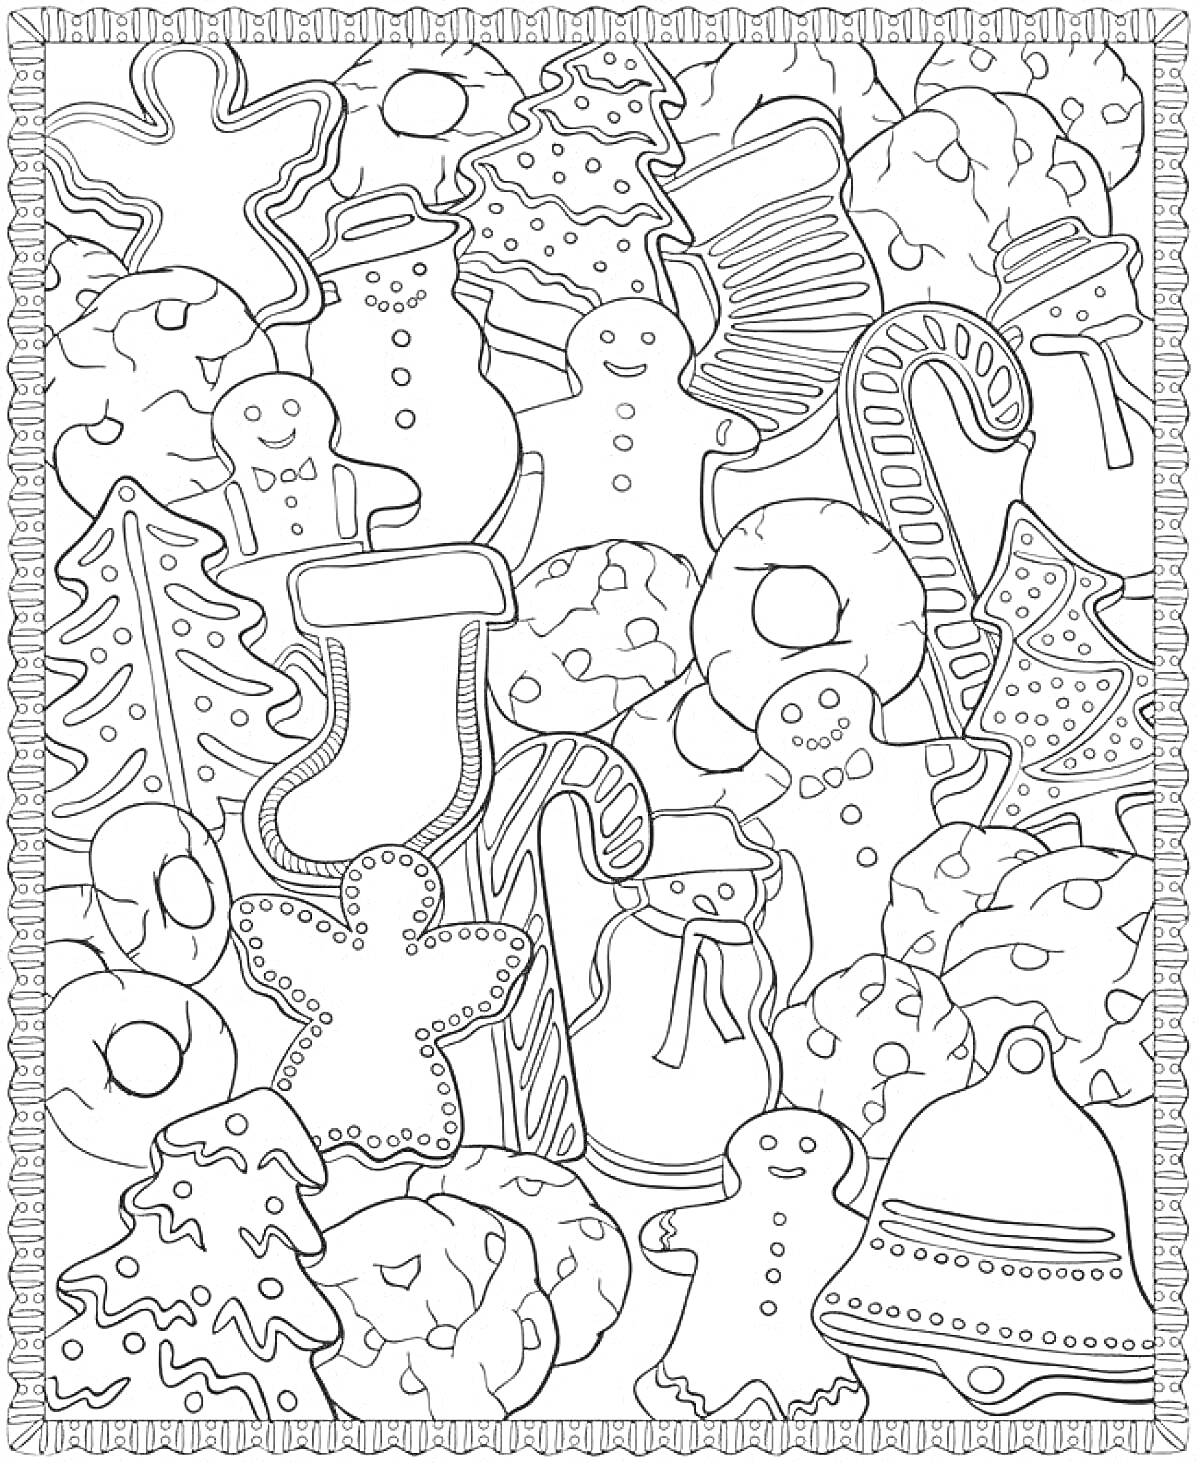 Пряничная новогодняя раскраска – пряничные человечки, снежинки, рукавички, колокольчики, елочки, снежные шары, конфеты